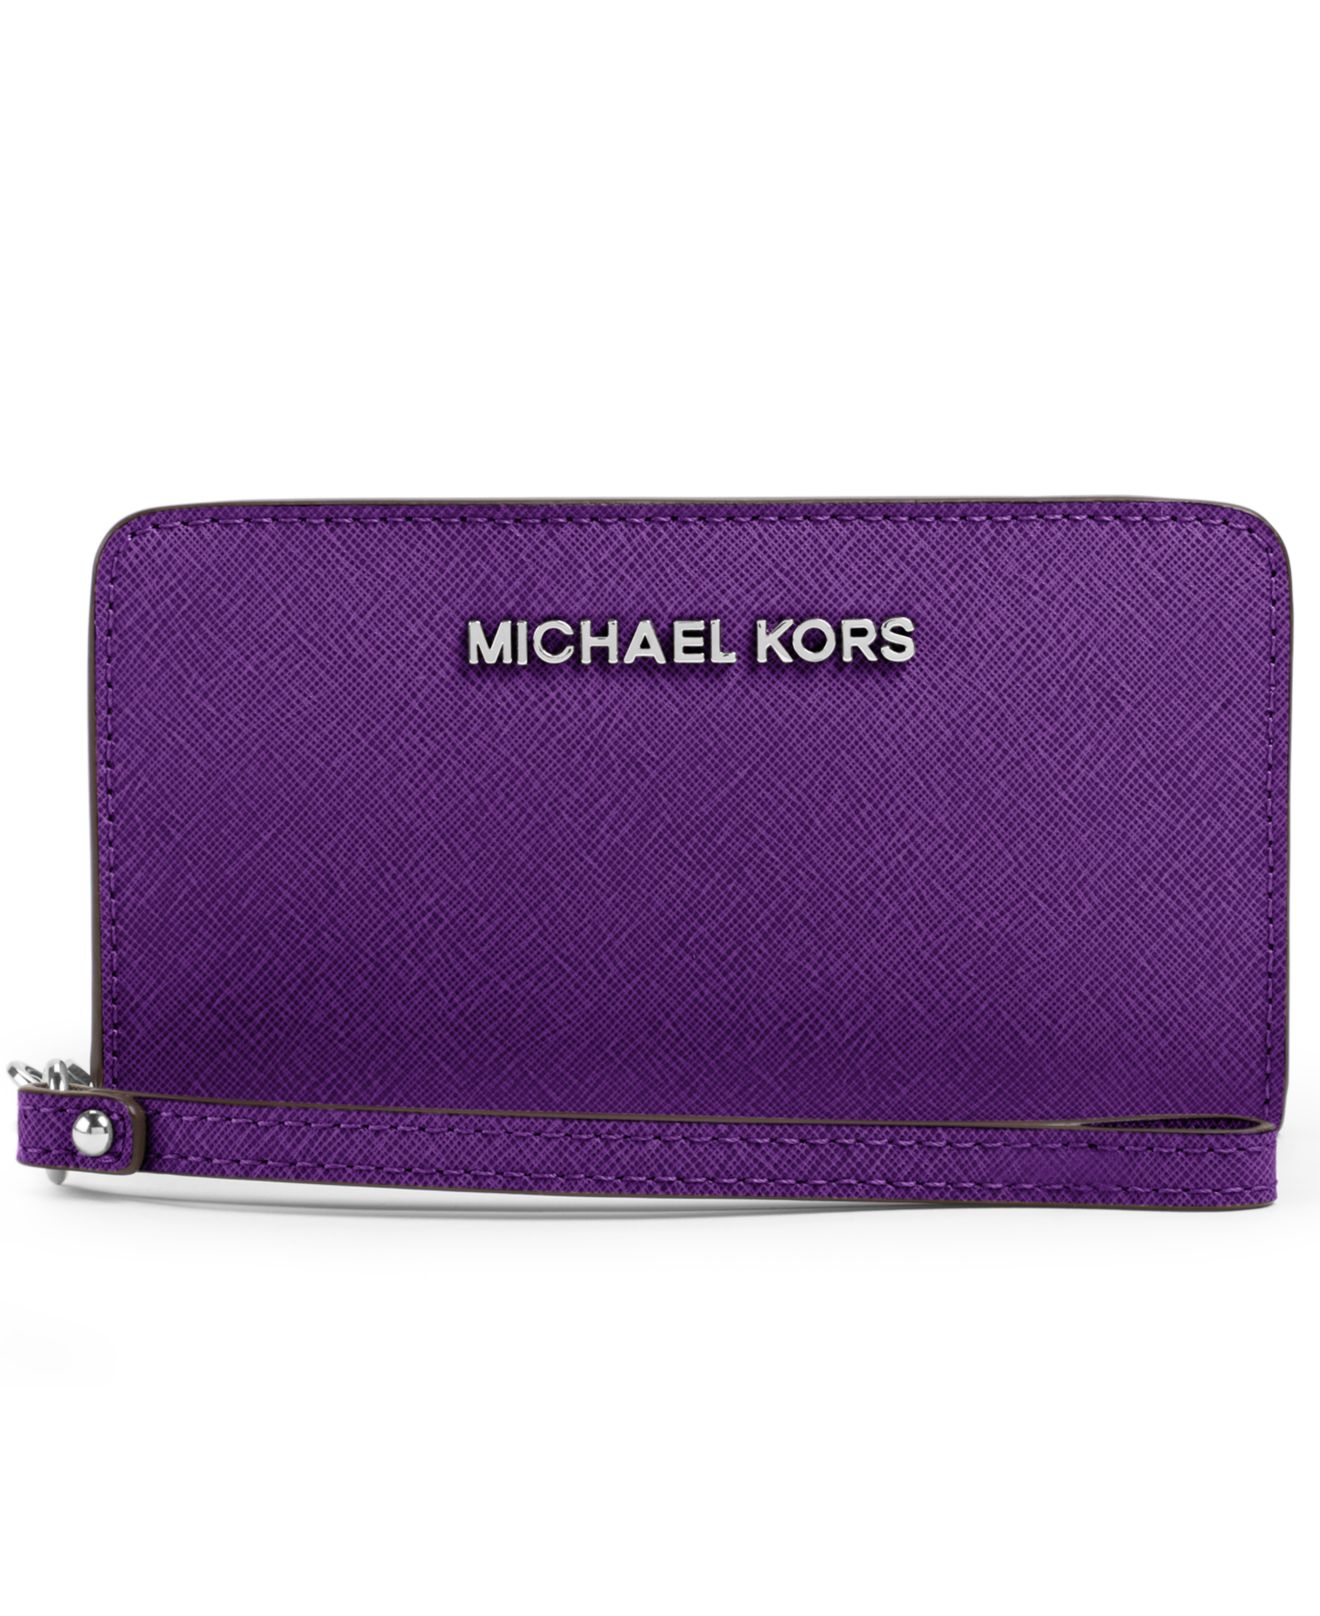 michael kors wallet violet